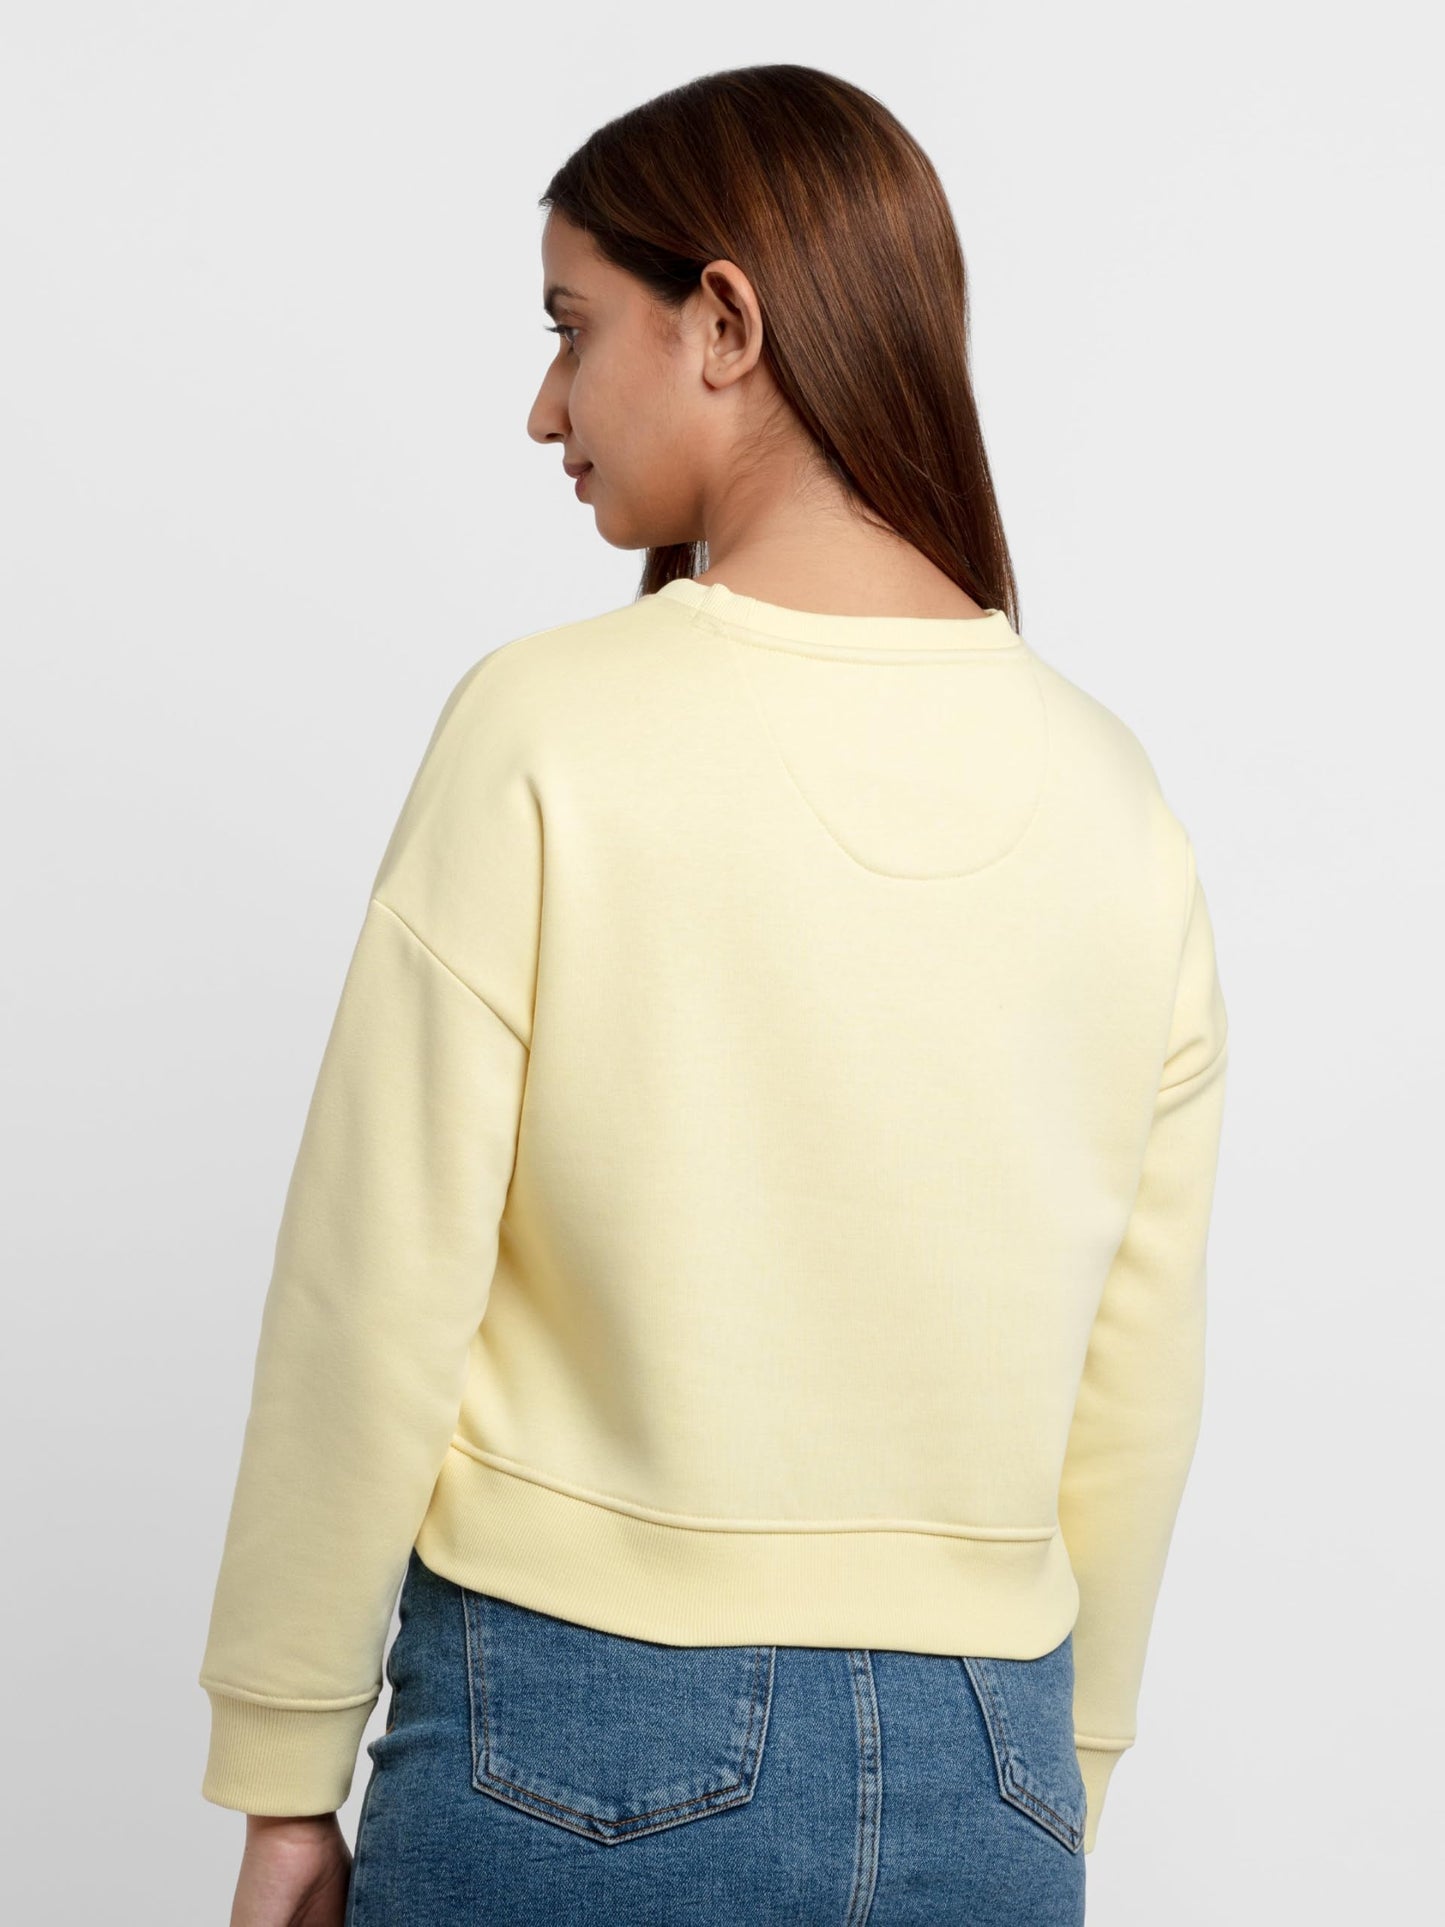 Status Quo Womens Printed Round Neck Sweatshirt Lemon